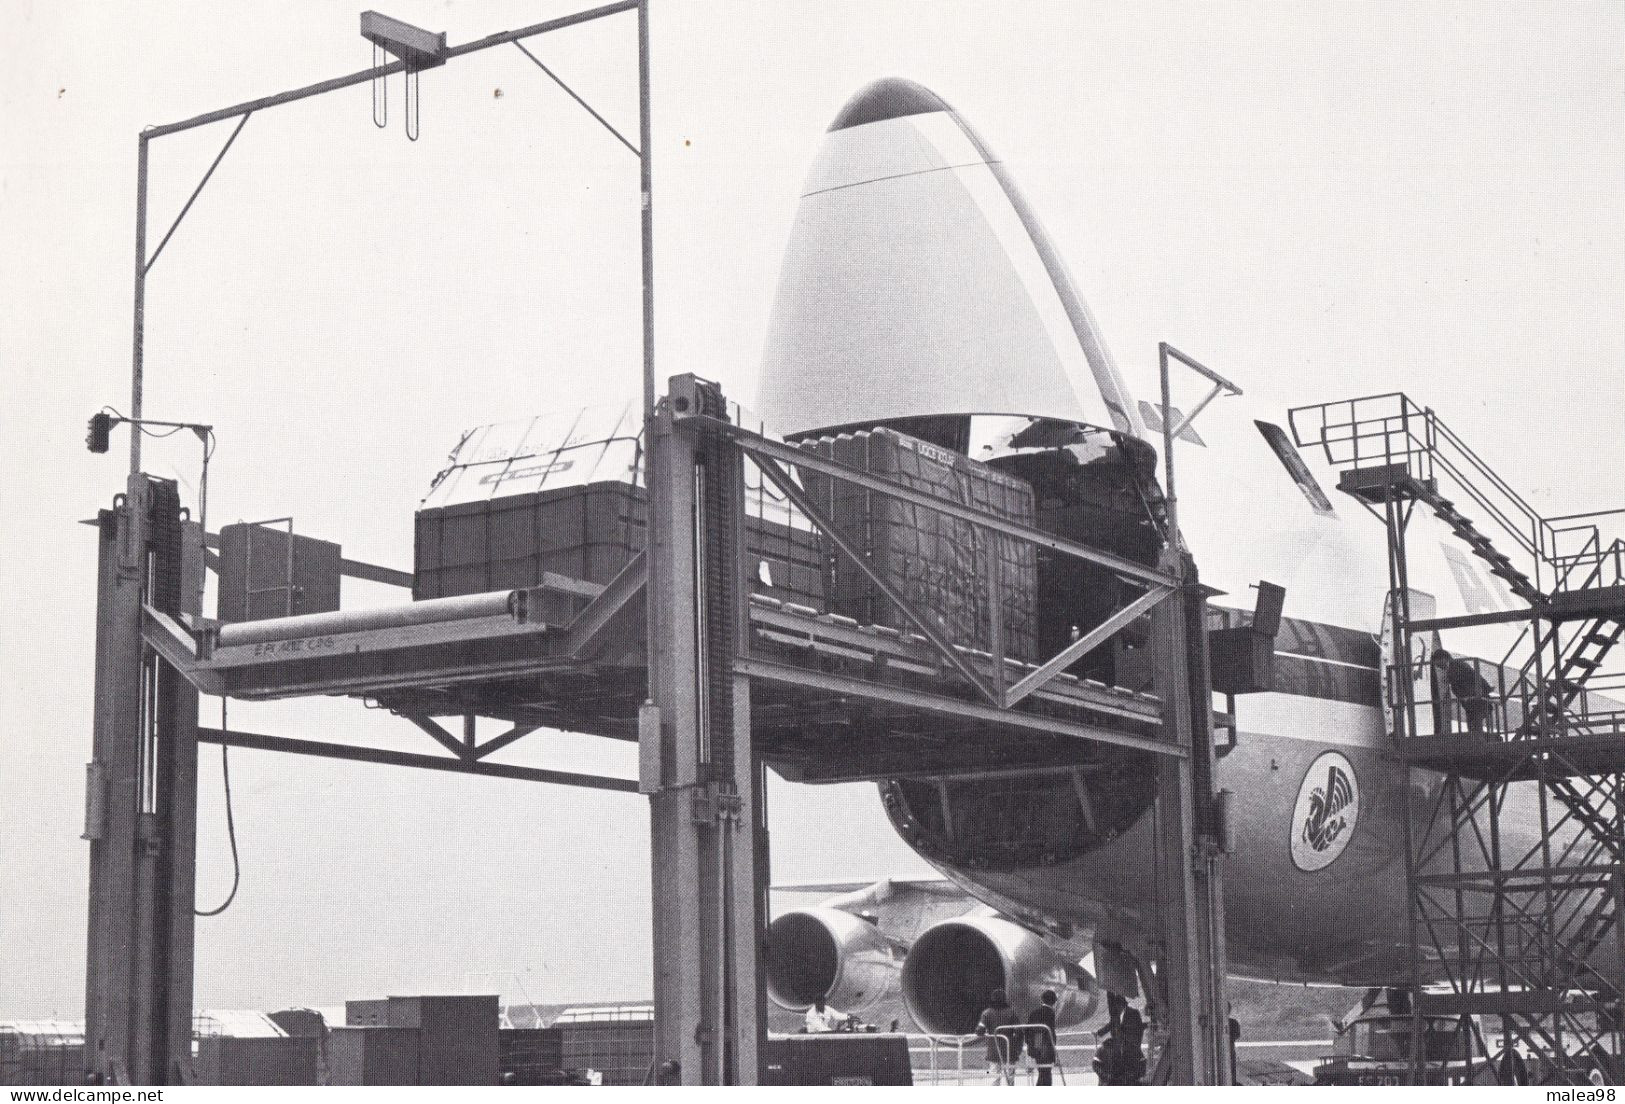 LE BOING 747 F  CARGO "SUPER PELICAN" ,,FICHE TECHNIQUE PUBLIEE PAR AIR FRANCE 1974   31X21 CM   TBE - Écorchés (schémas)